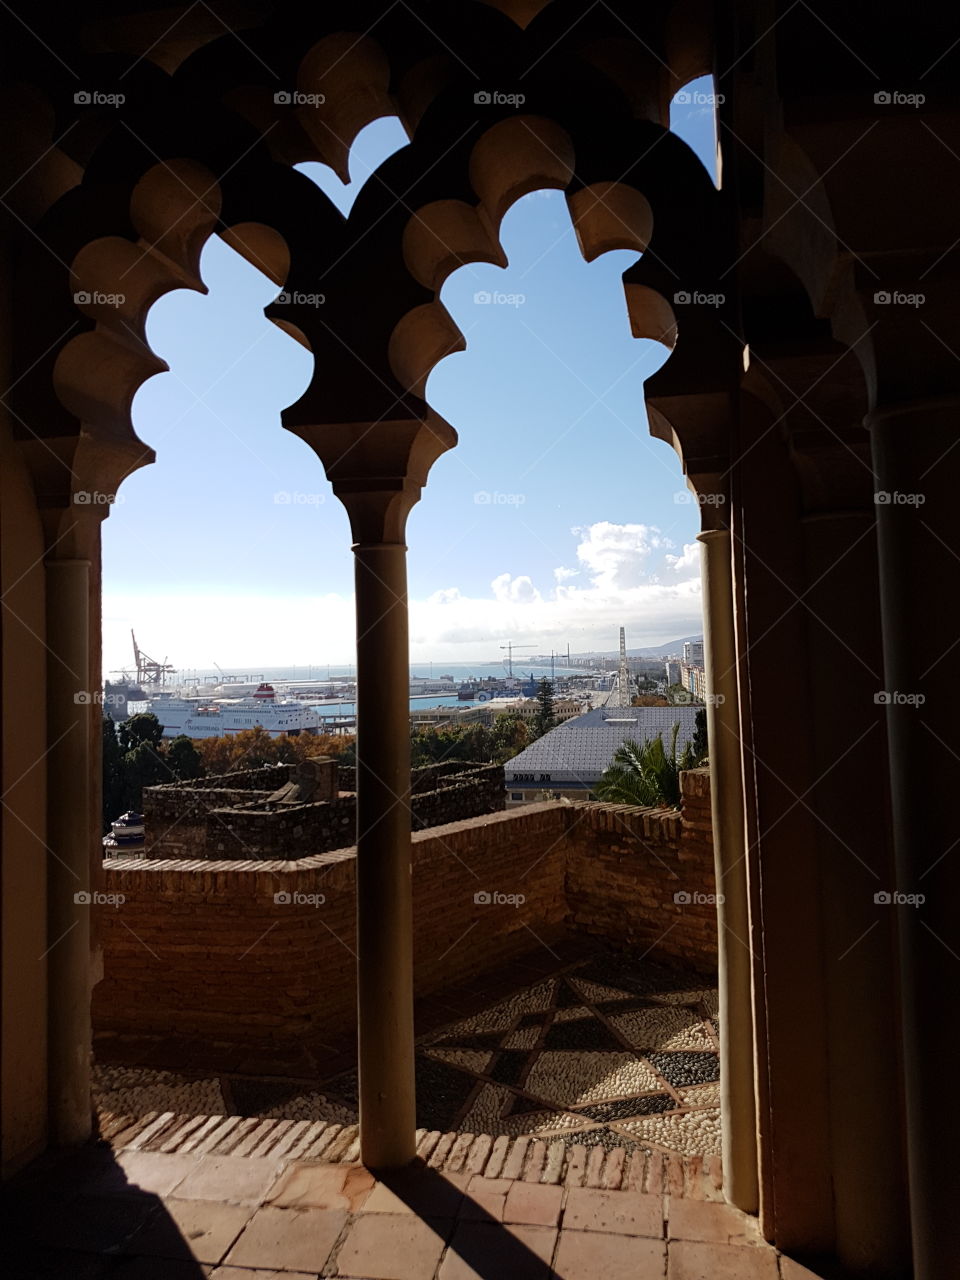 Moorish Castle Arches overlooking Malaga Spain